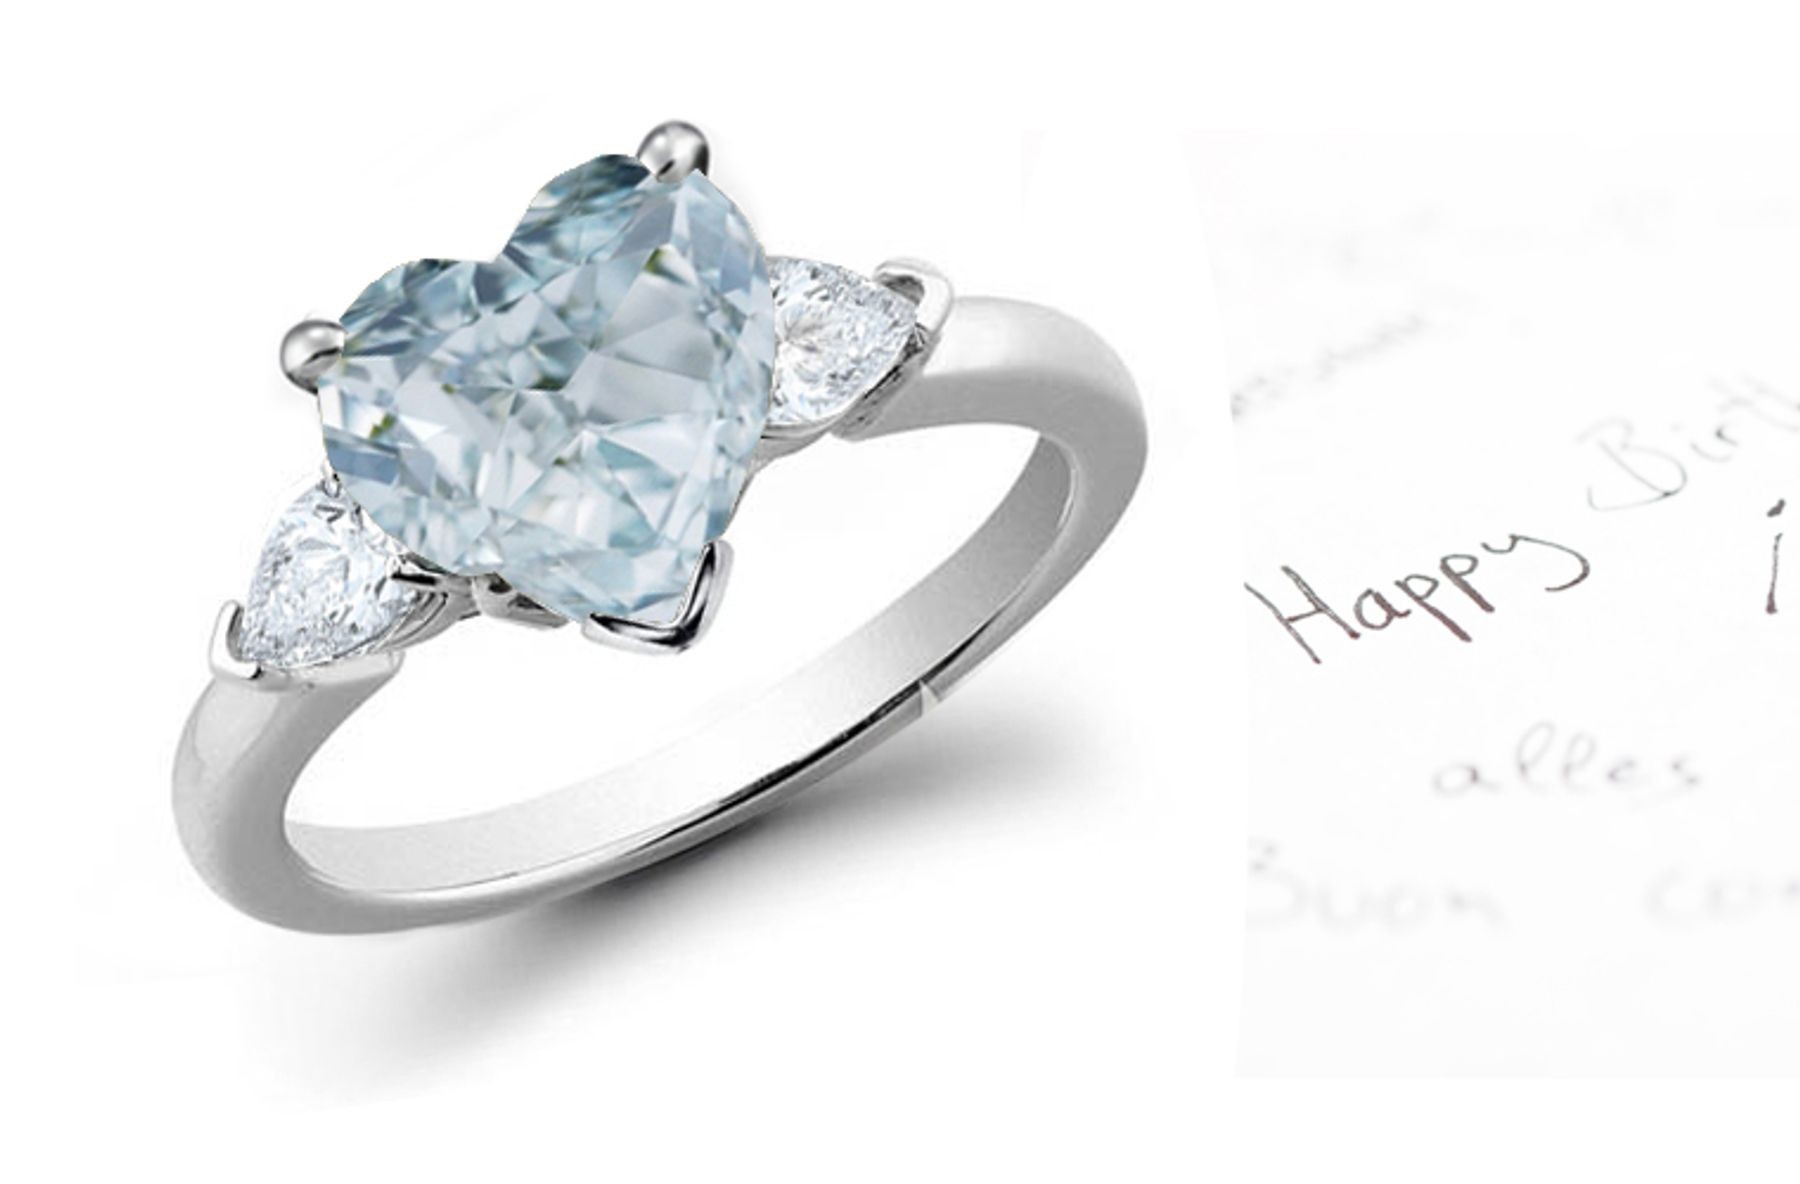 Heart Blue Diamond Designer Ring